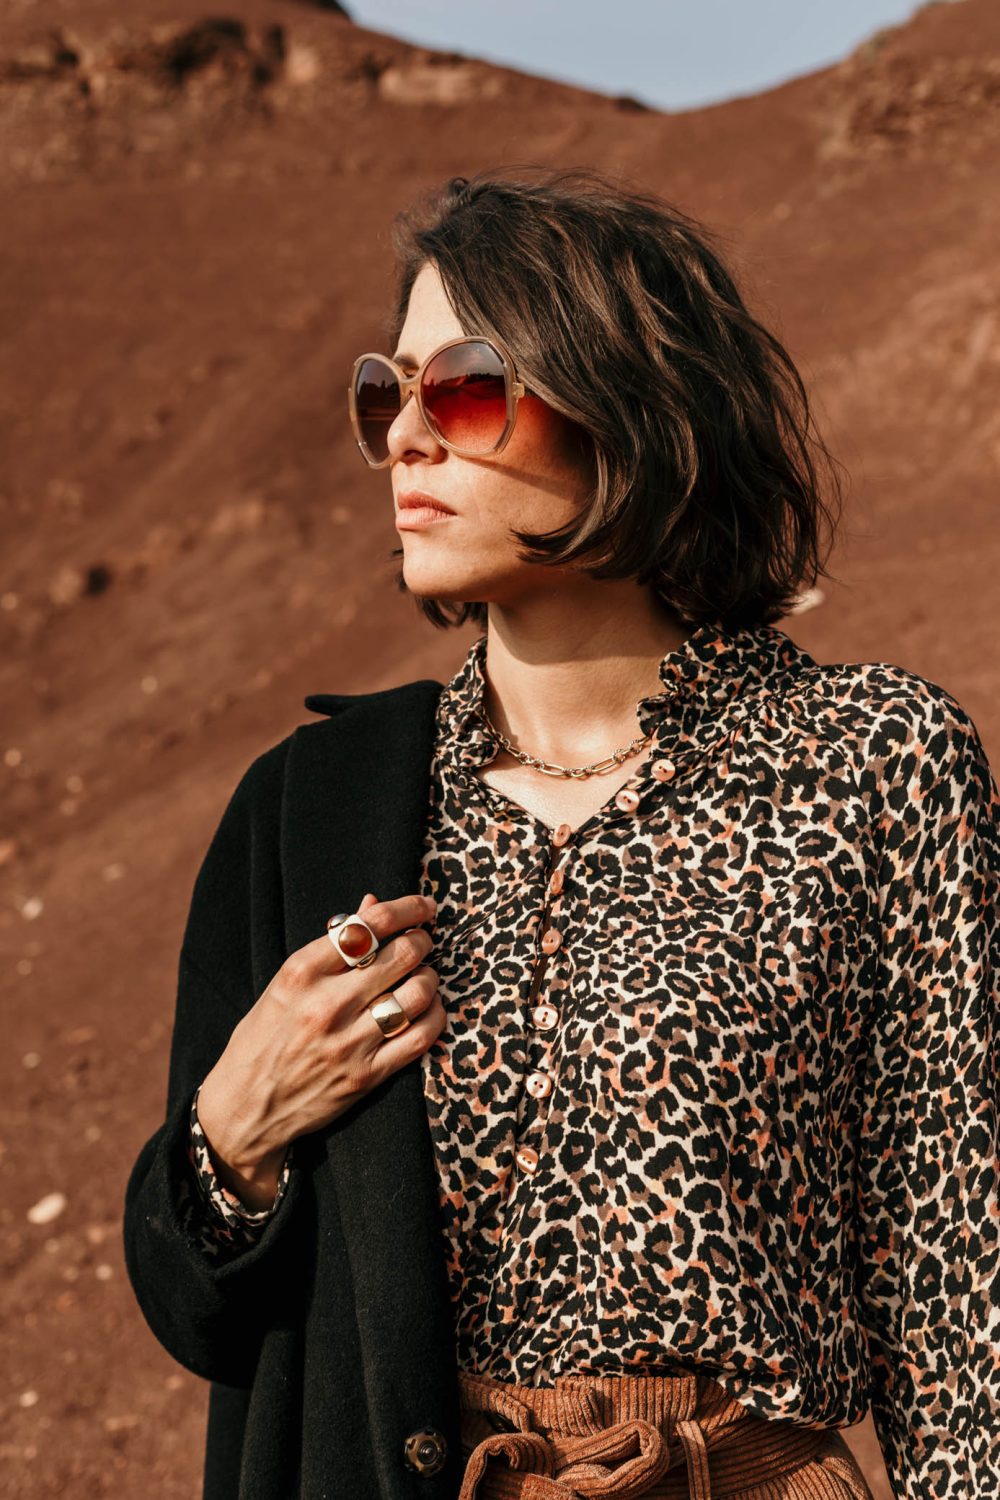 blouse femme made in France, conçu dans un beau tissu en viscose Ecovero imprimé léopard qui offre douceur et fluidité.